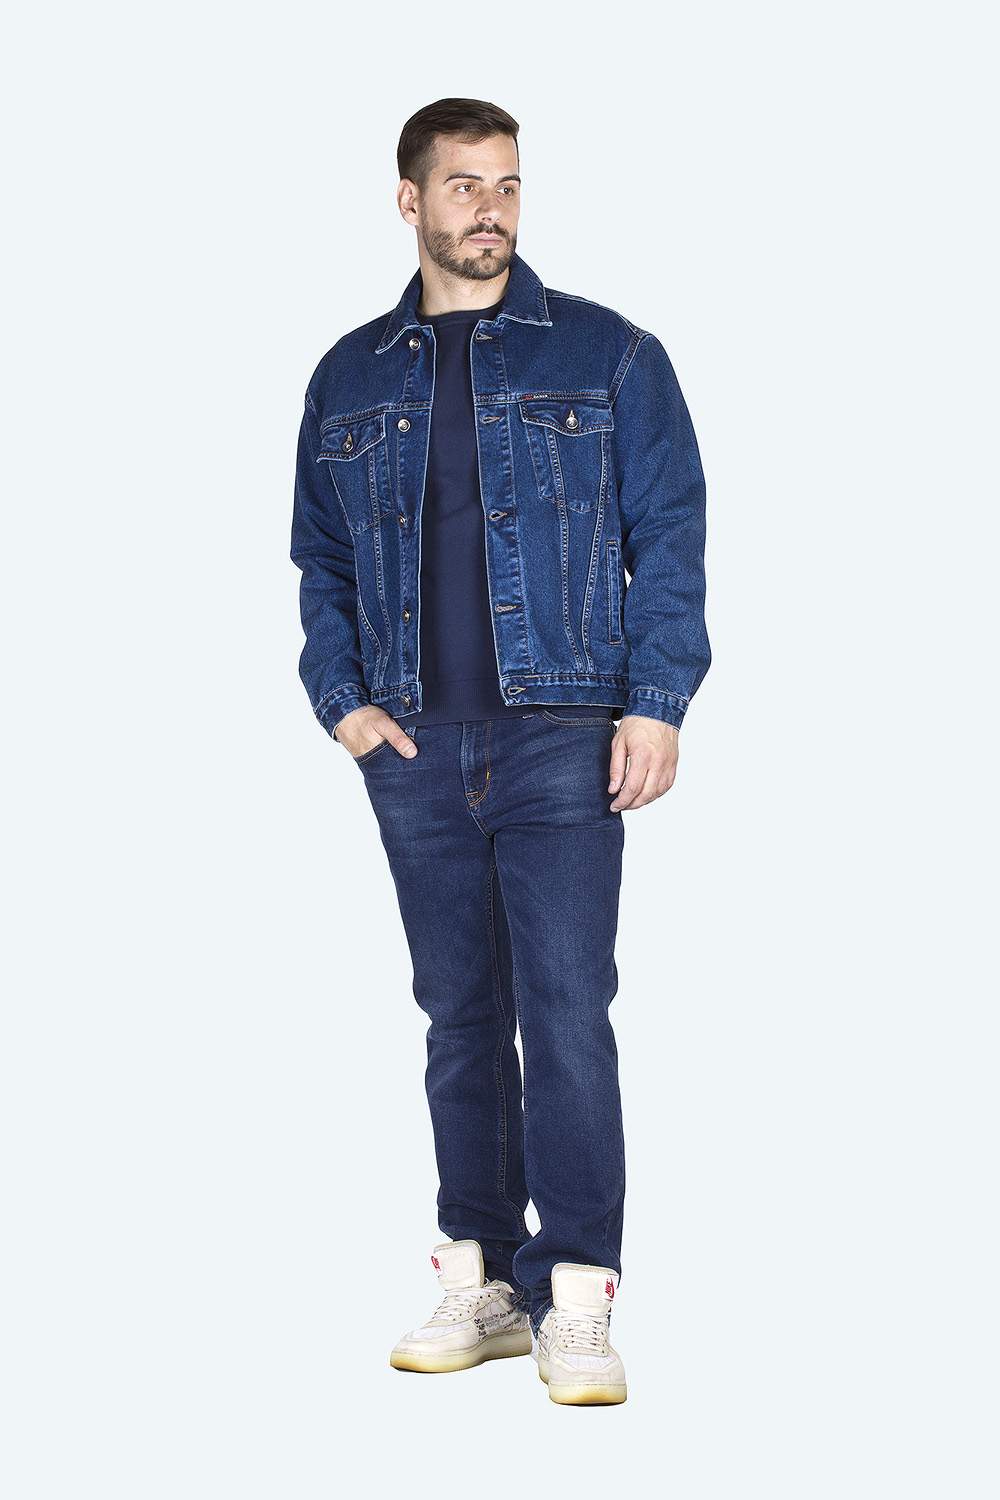 Джинсовая куртка мужская Dairos GD5060502 синяя XXL